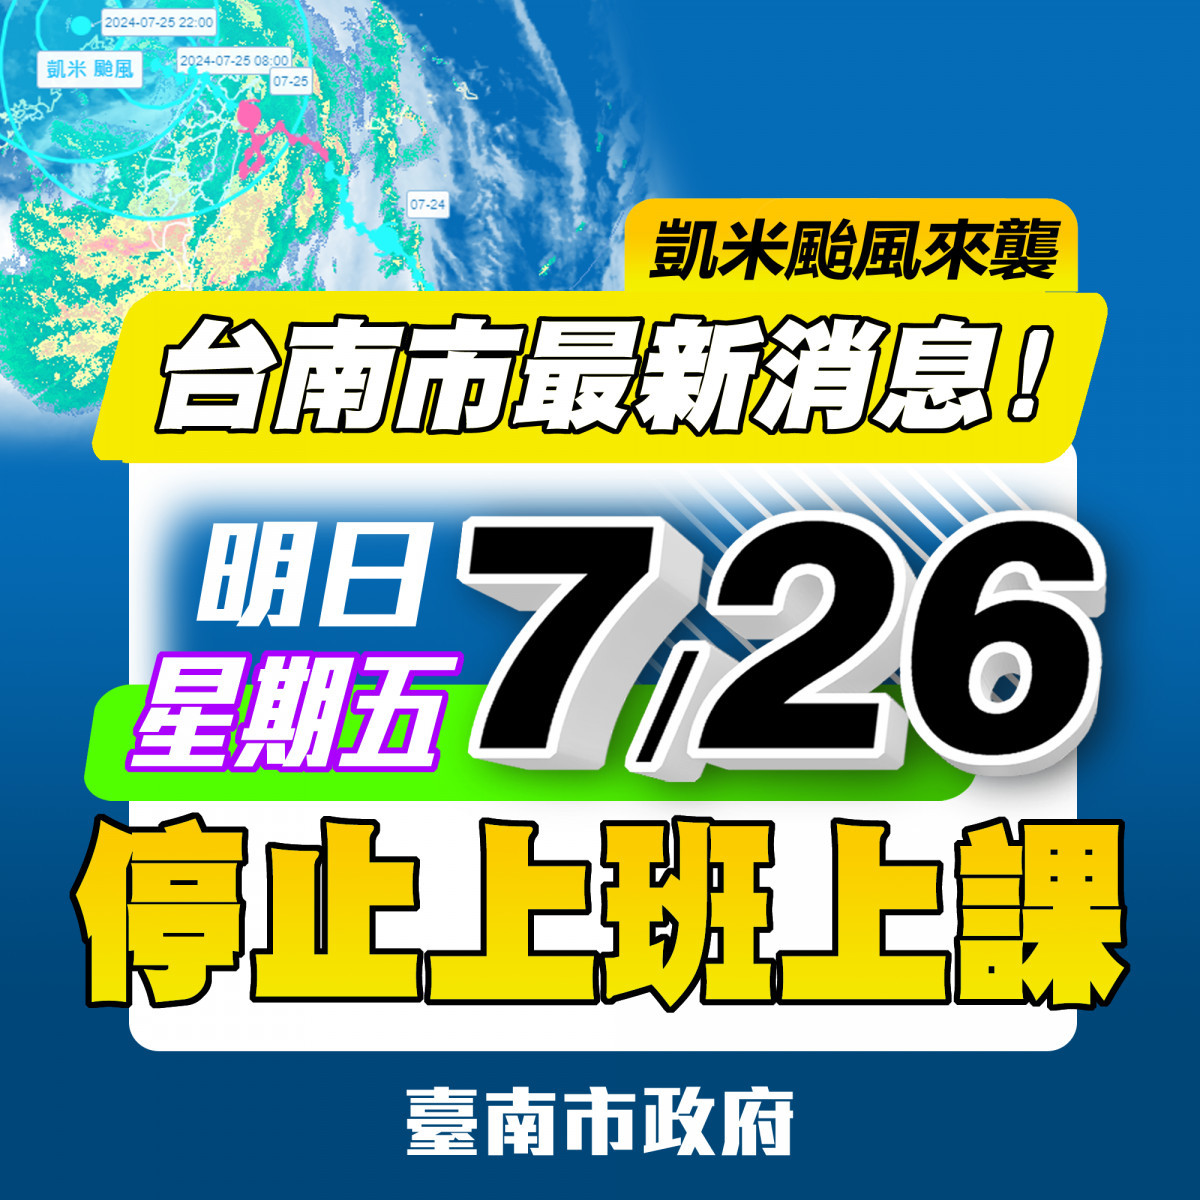 凱米颱風災情影響　南市府急轉彎宣布7/26停止上班、停止上課 台灣好新聞 第1張